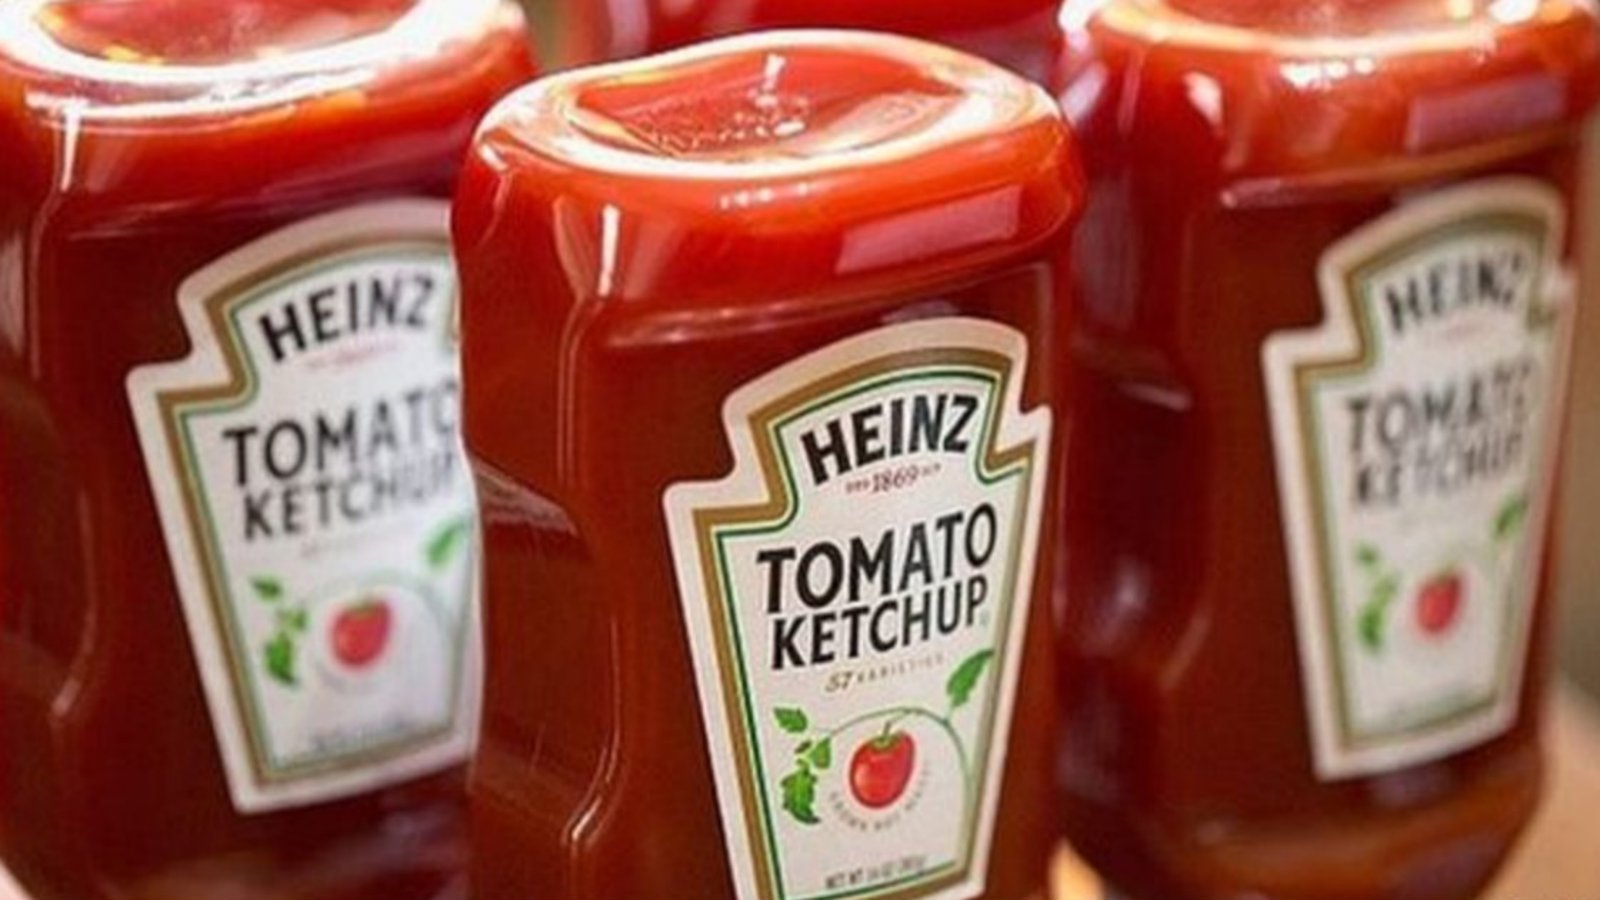 Voici pourquoi vous devriez éviter d’acheter ce ketchup populaire!